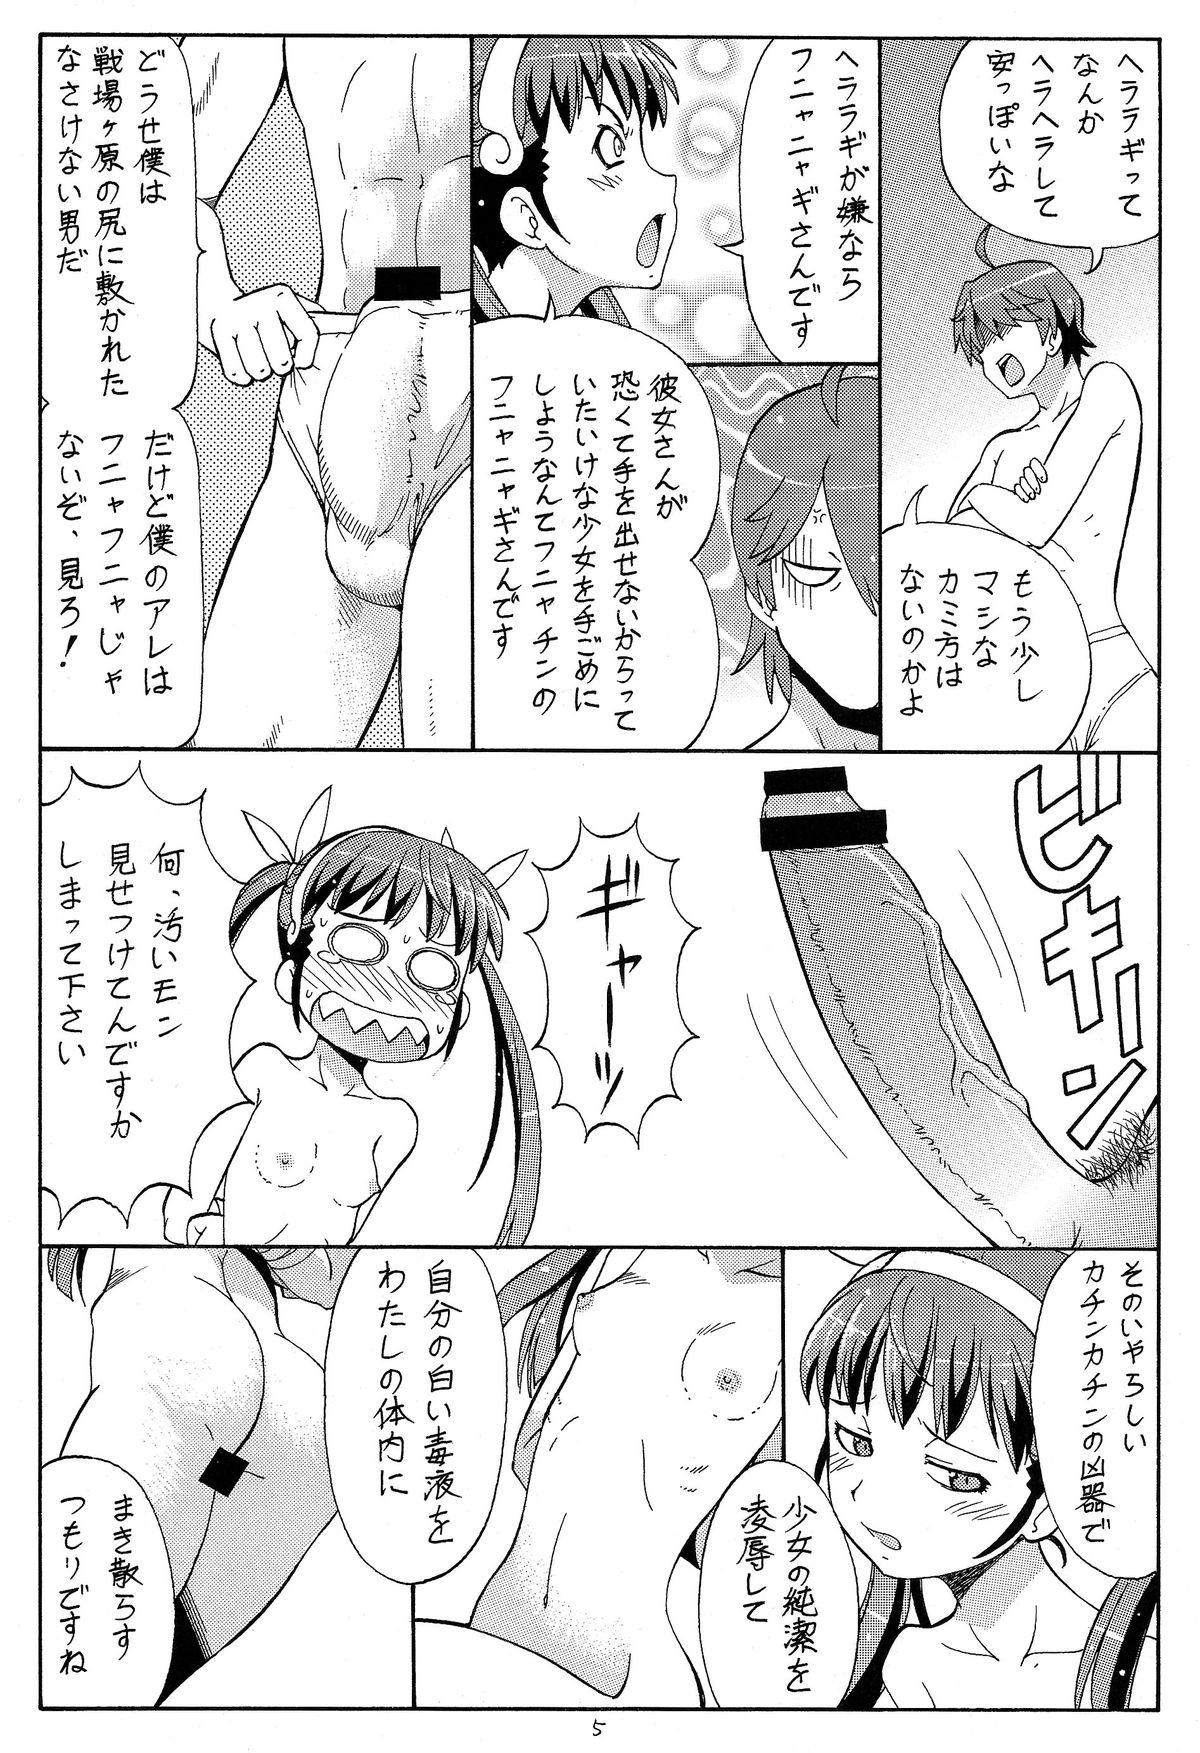 Culo Hito ni Hakanai to Kaite "Araragi" to Yomu 4 - Bakemonogatari Pegging - Page 7